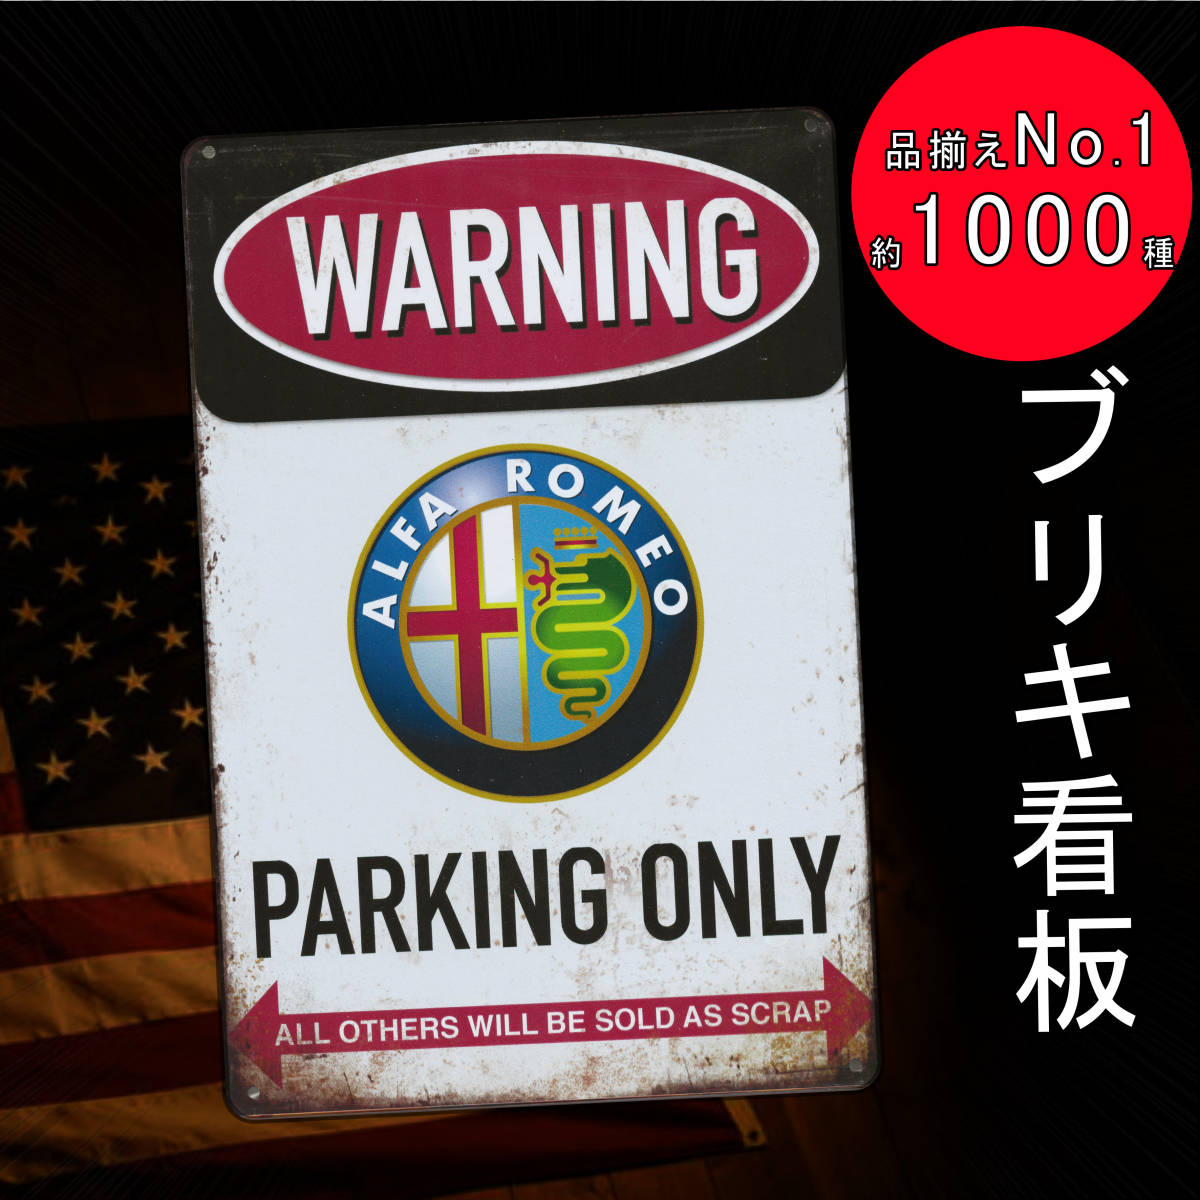 適切な価格 駐車禁止 NO PARKING 《122》ブリキ 看板 レトロ風